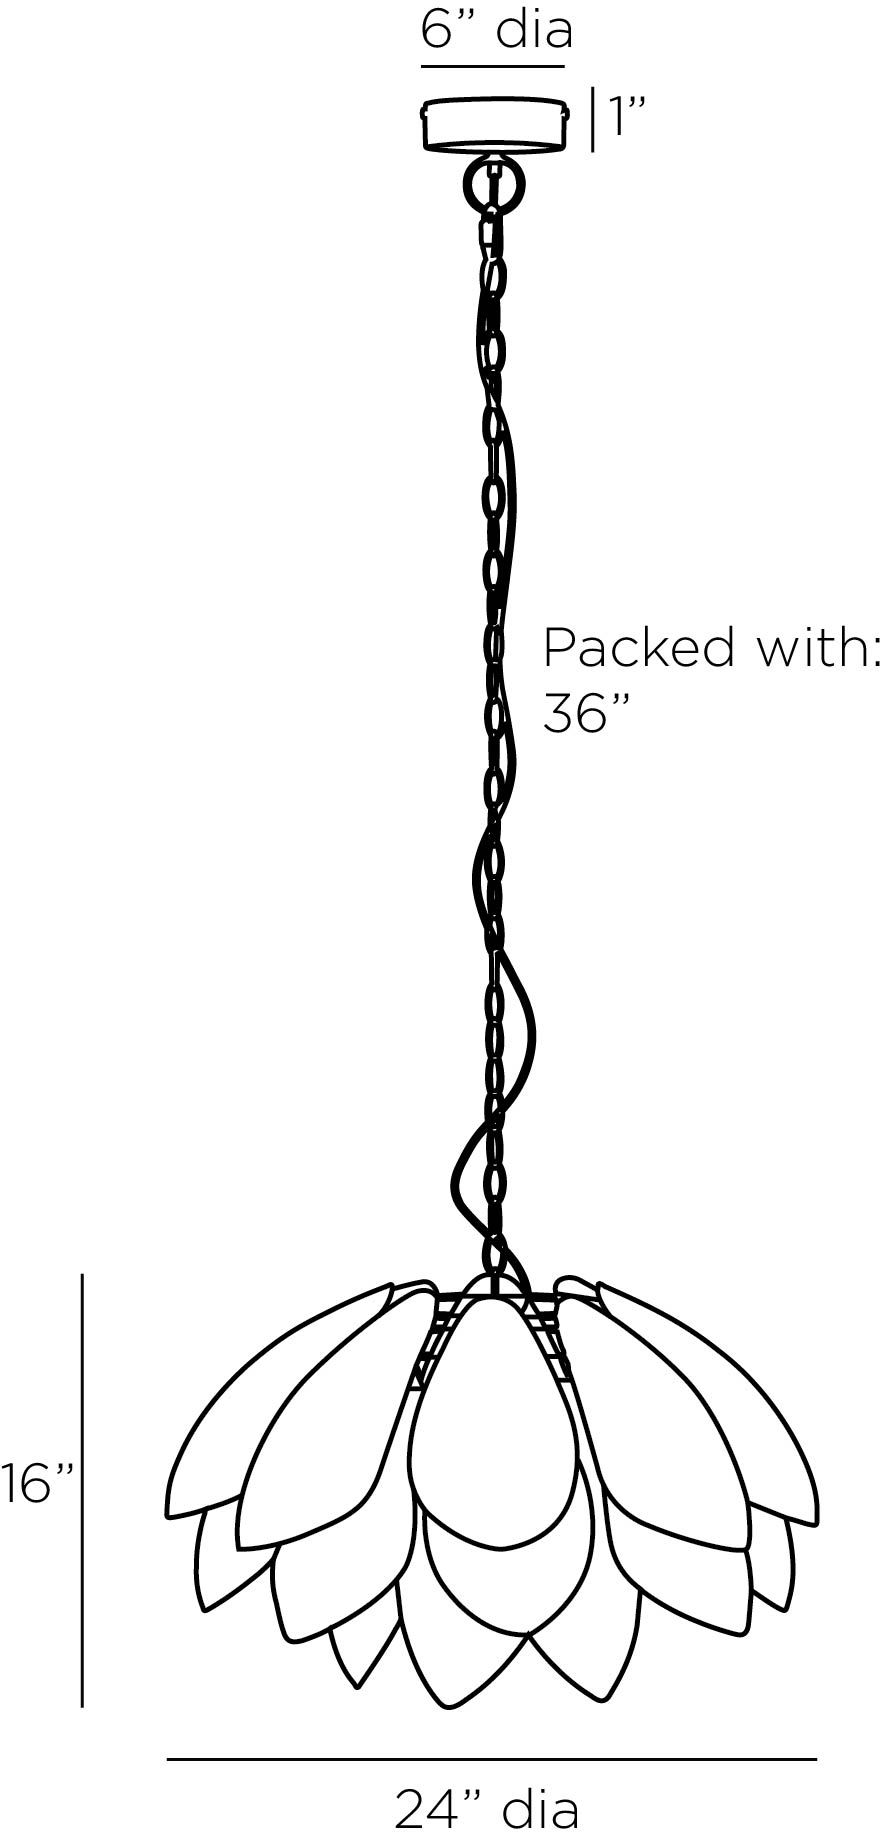 arteriors ayana chandelier diagram